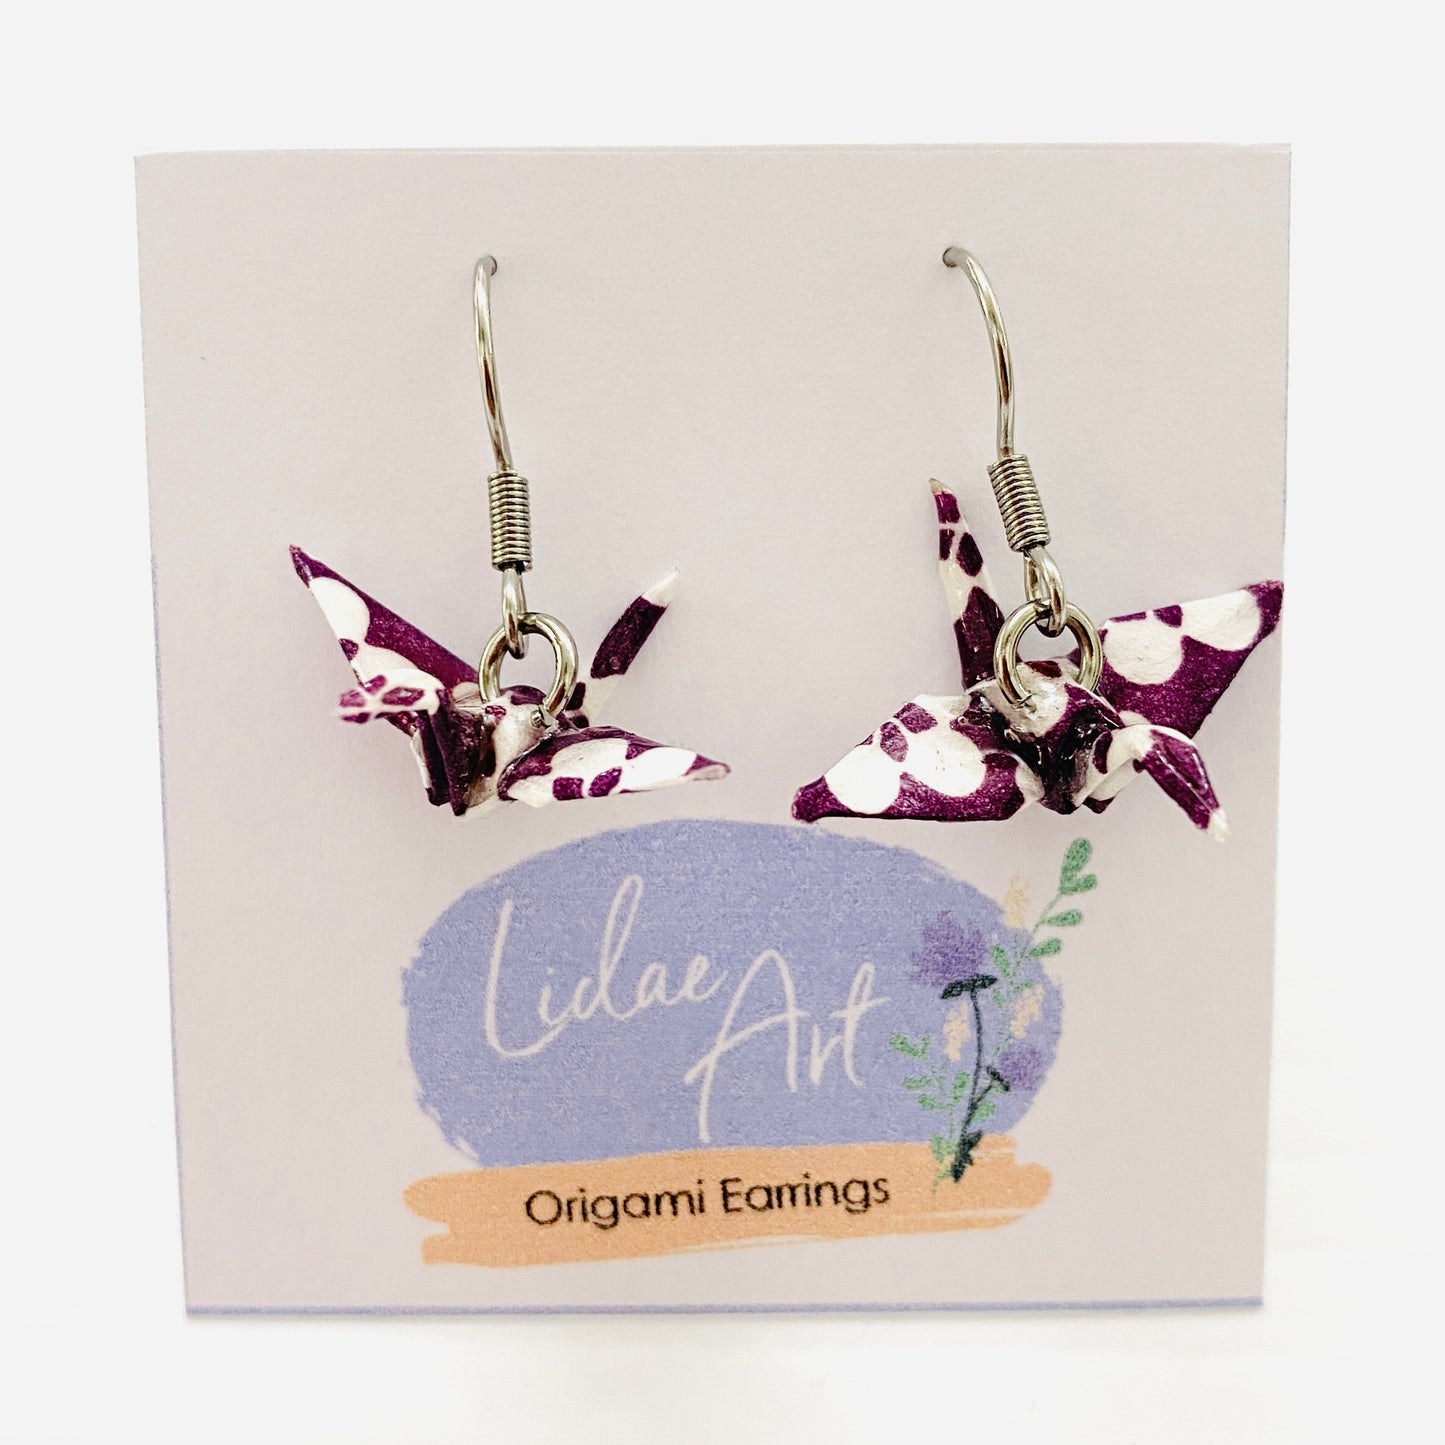 Lidae Art Origami Crane Earrings Purple Flowers